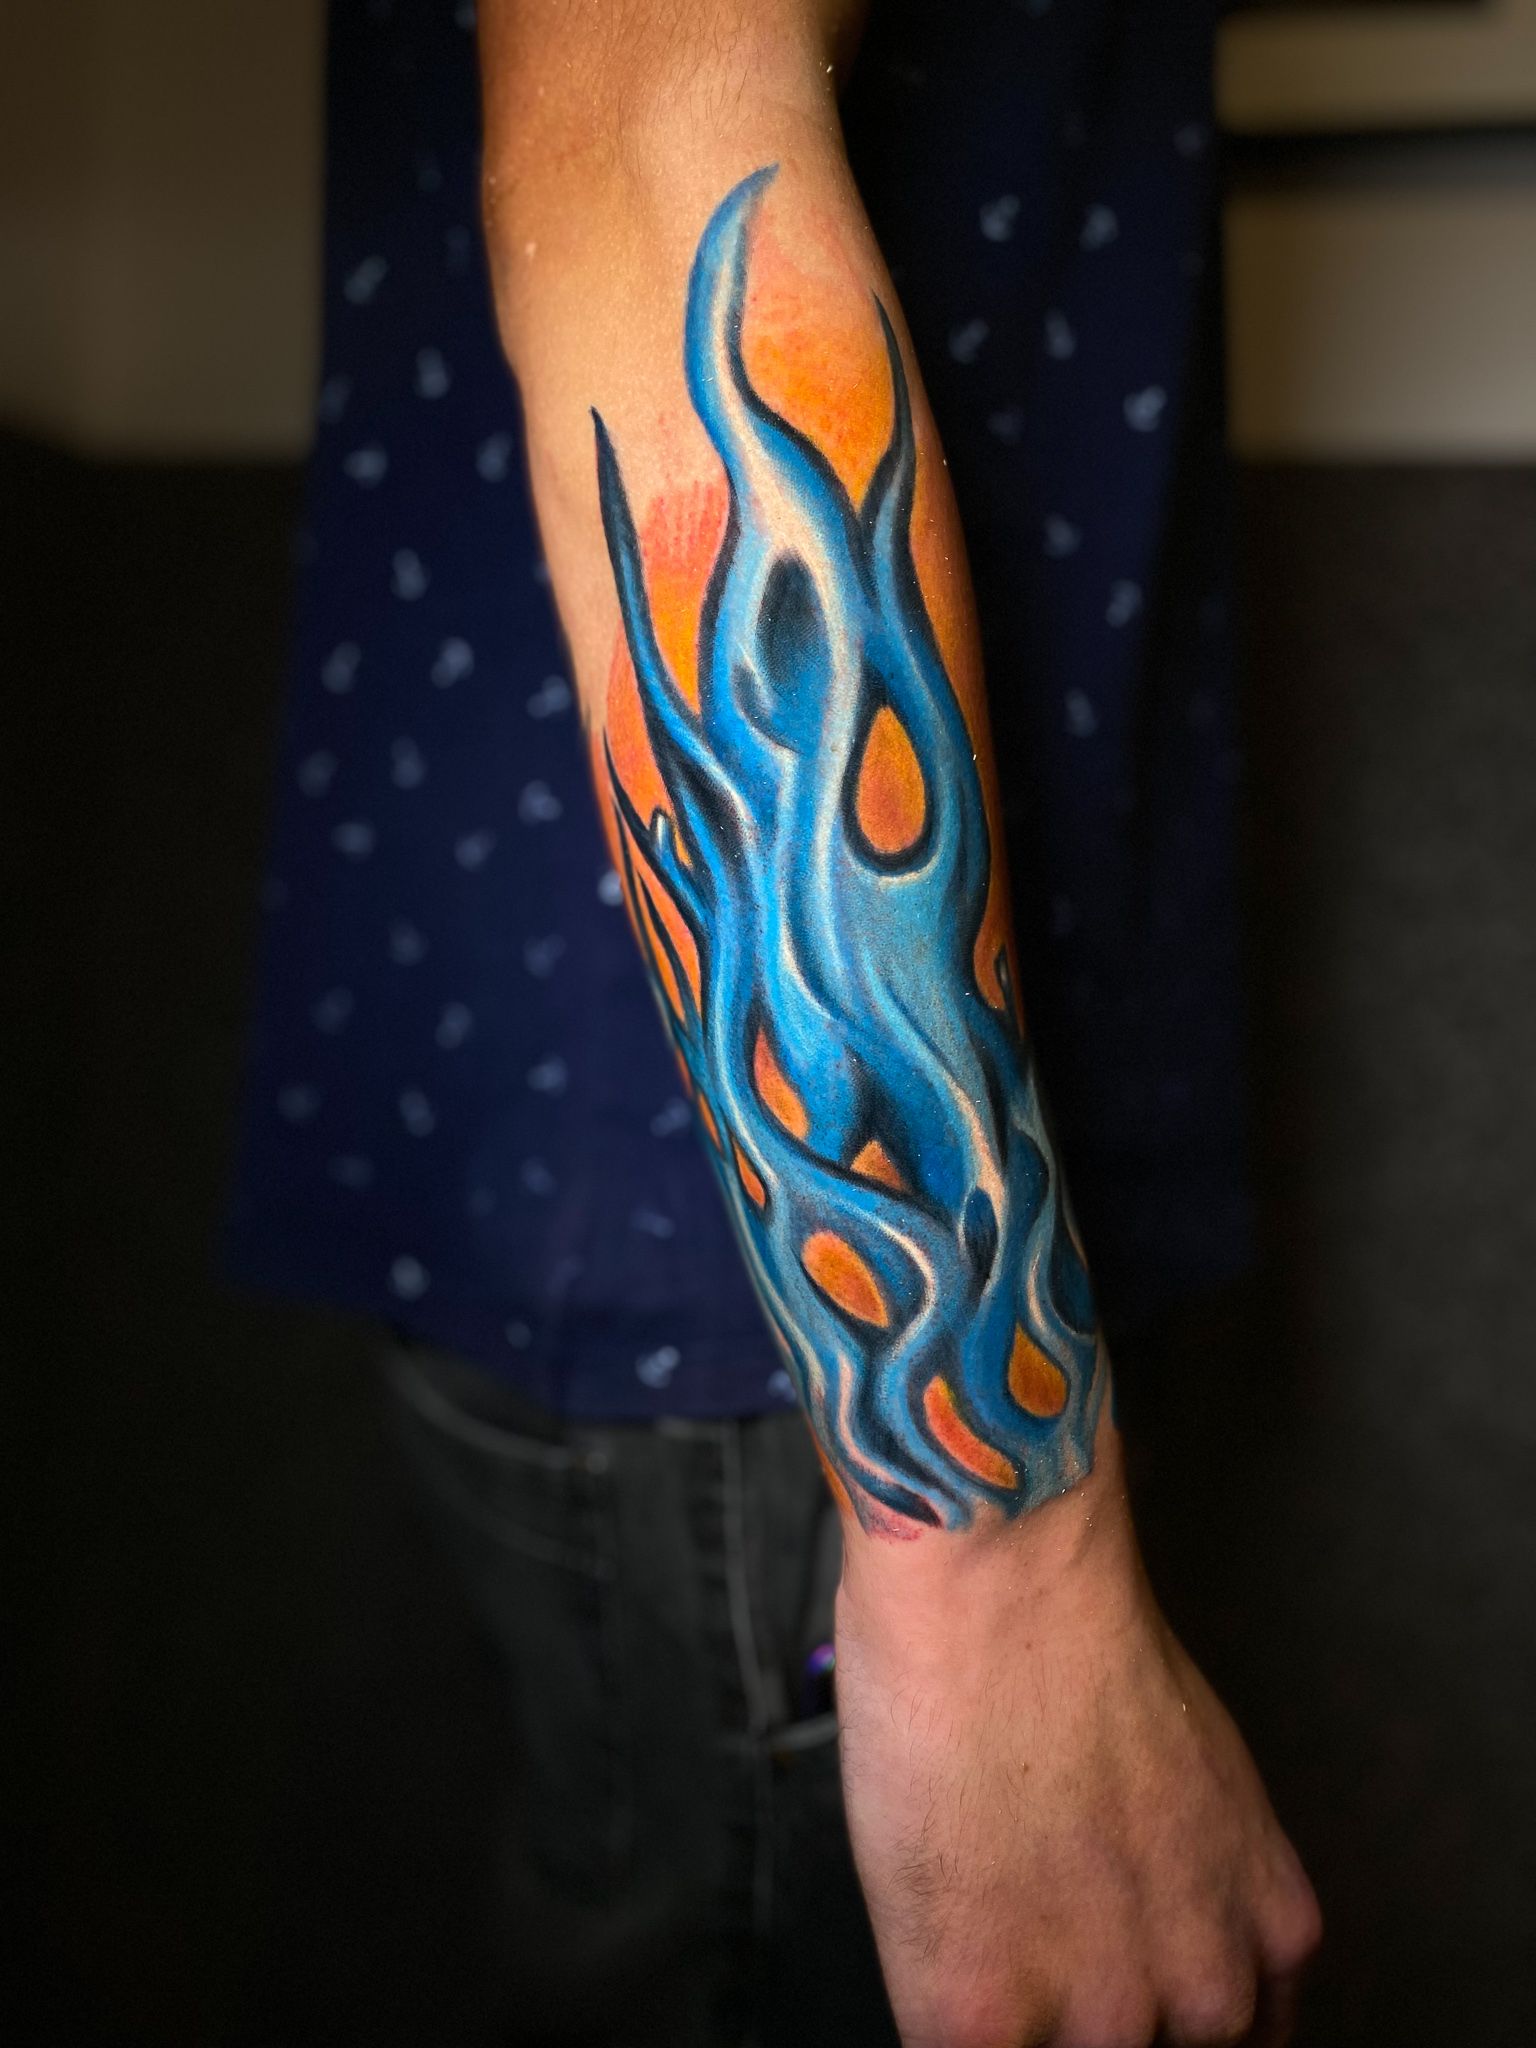 120 Fire Tattoo Ideas  Burning Flame Tattoo Designs